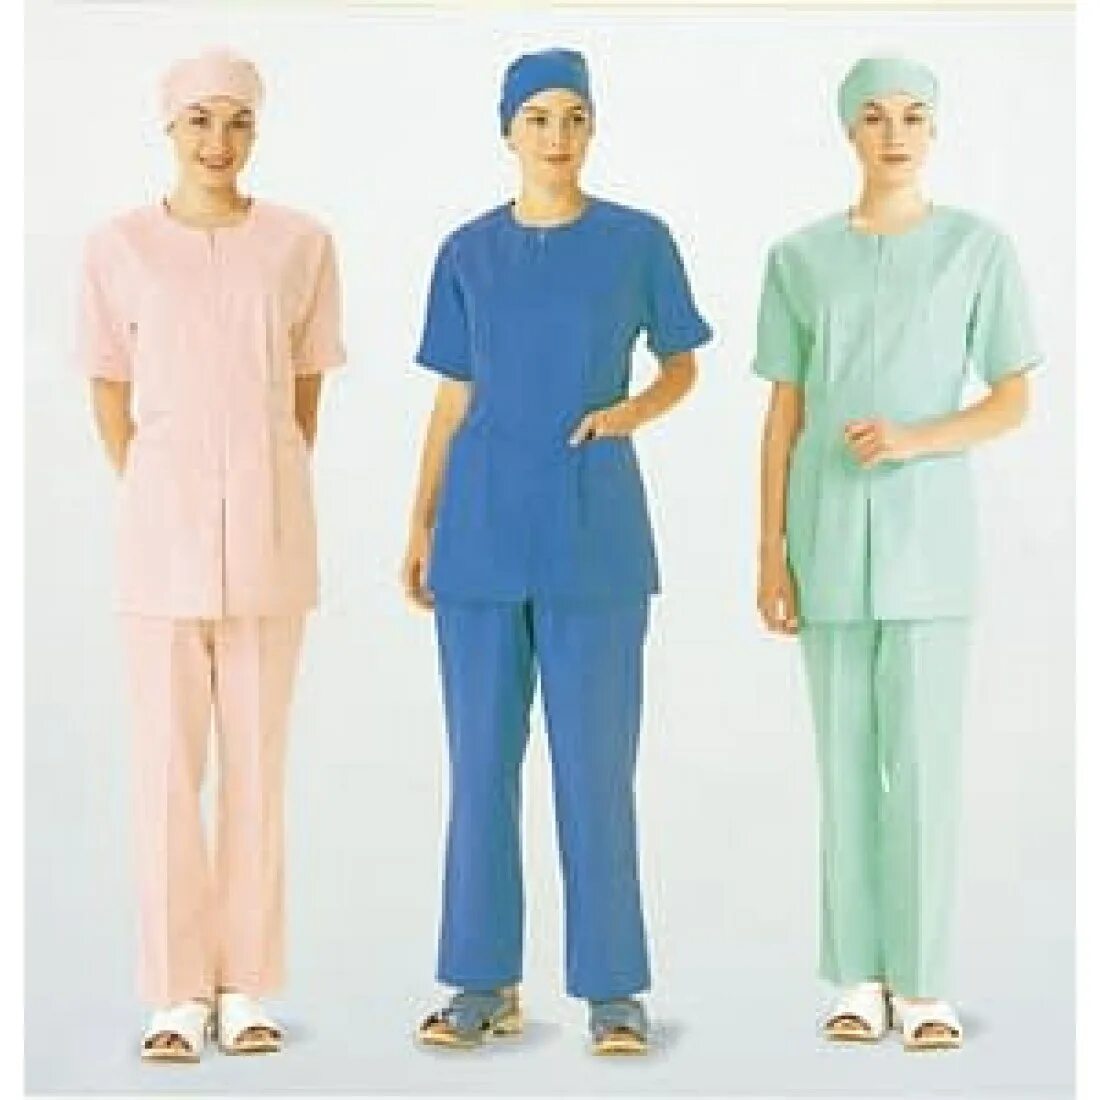 Сан одежда. Медицинская форма. Одежда врача. Одежда медицинского персонала. Одежда медработника.